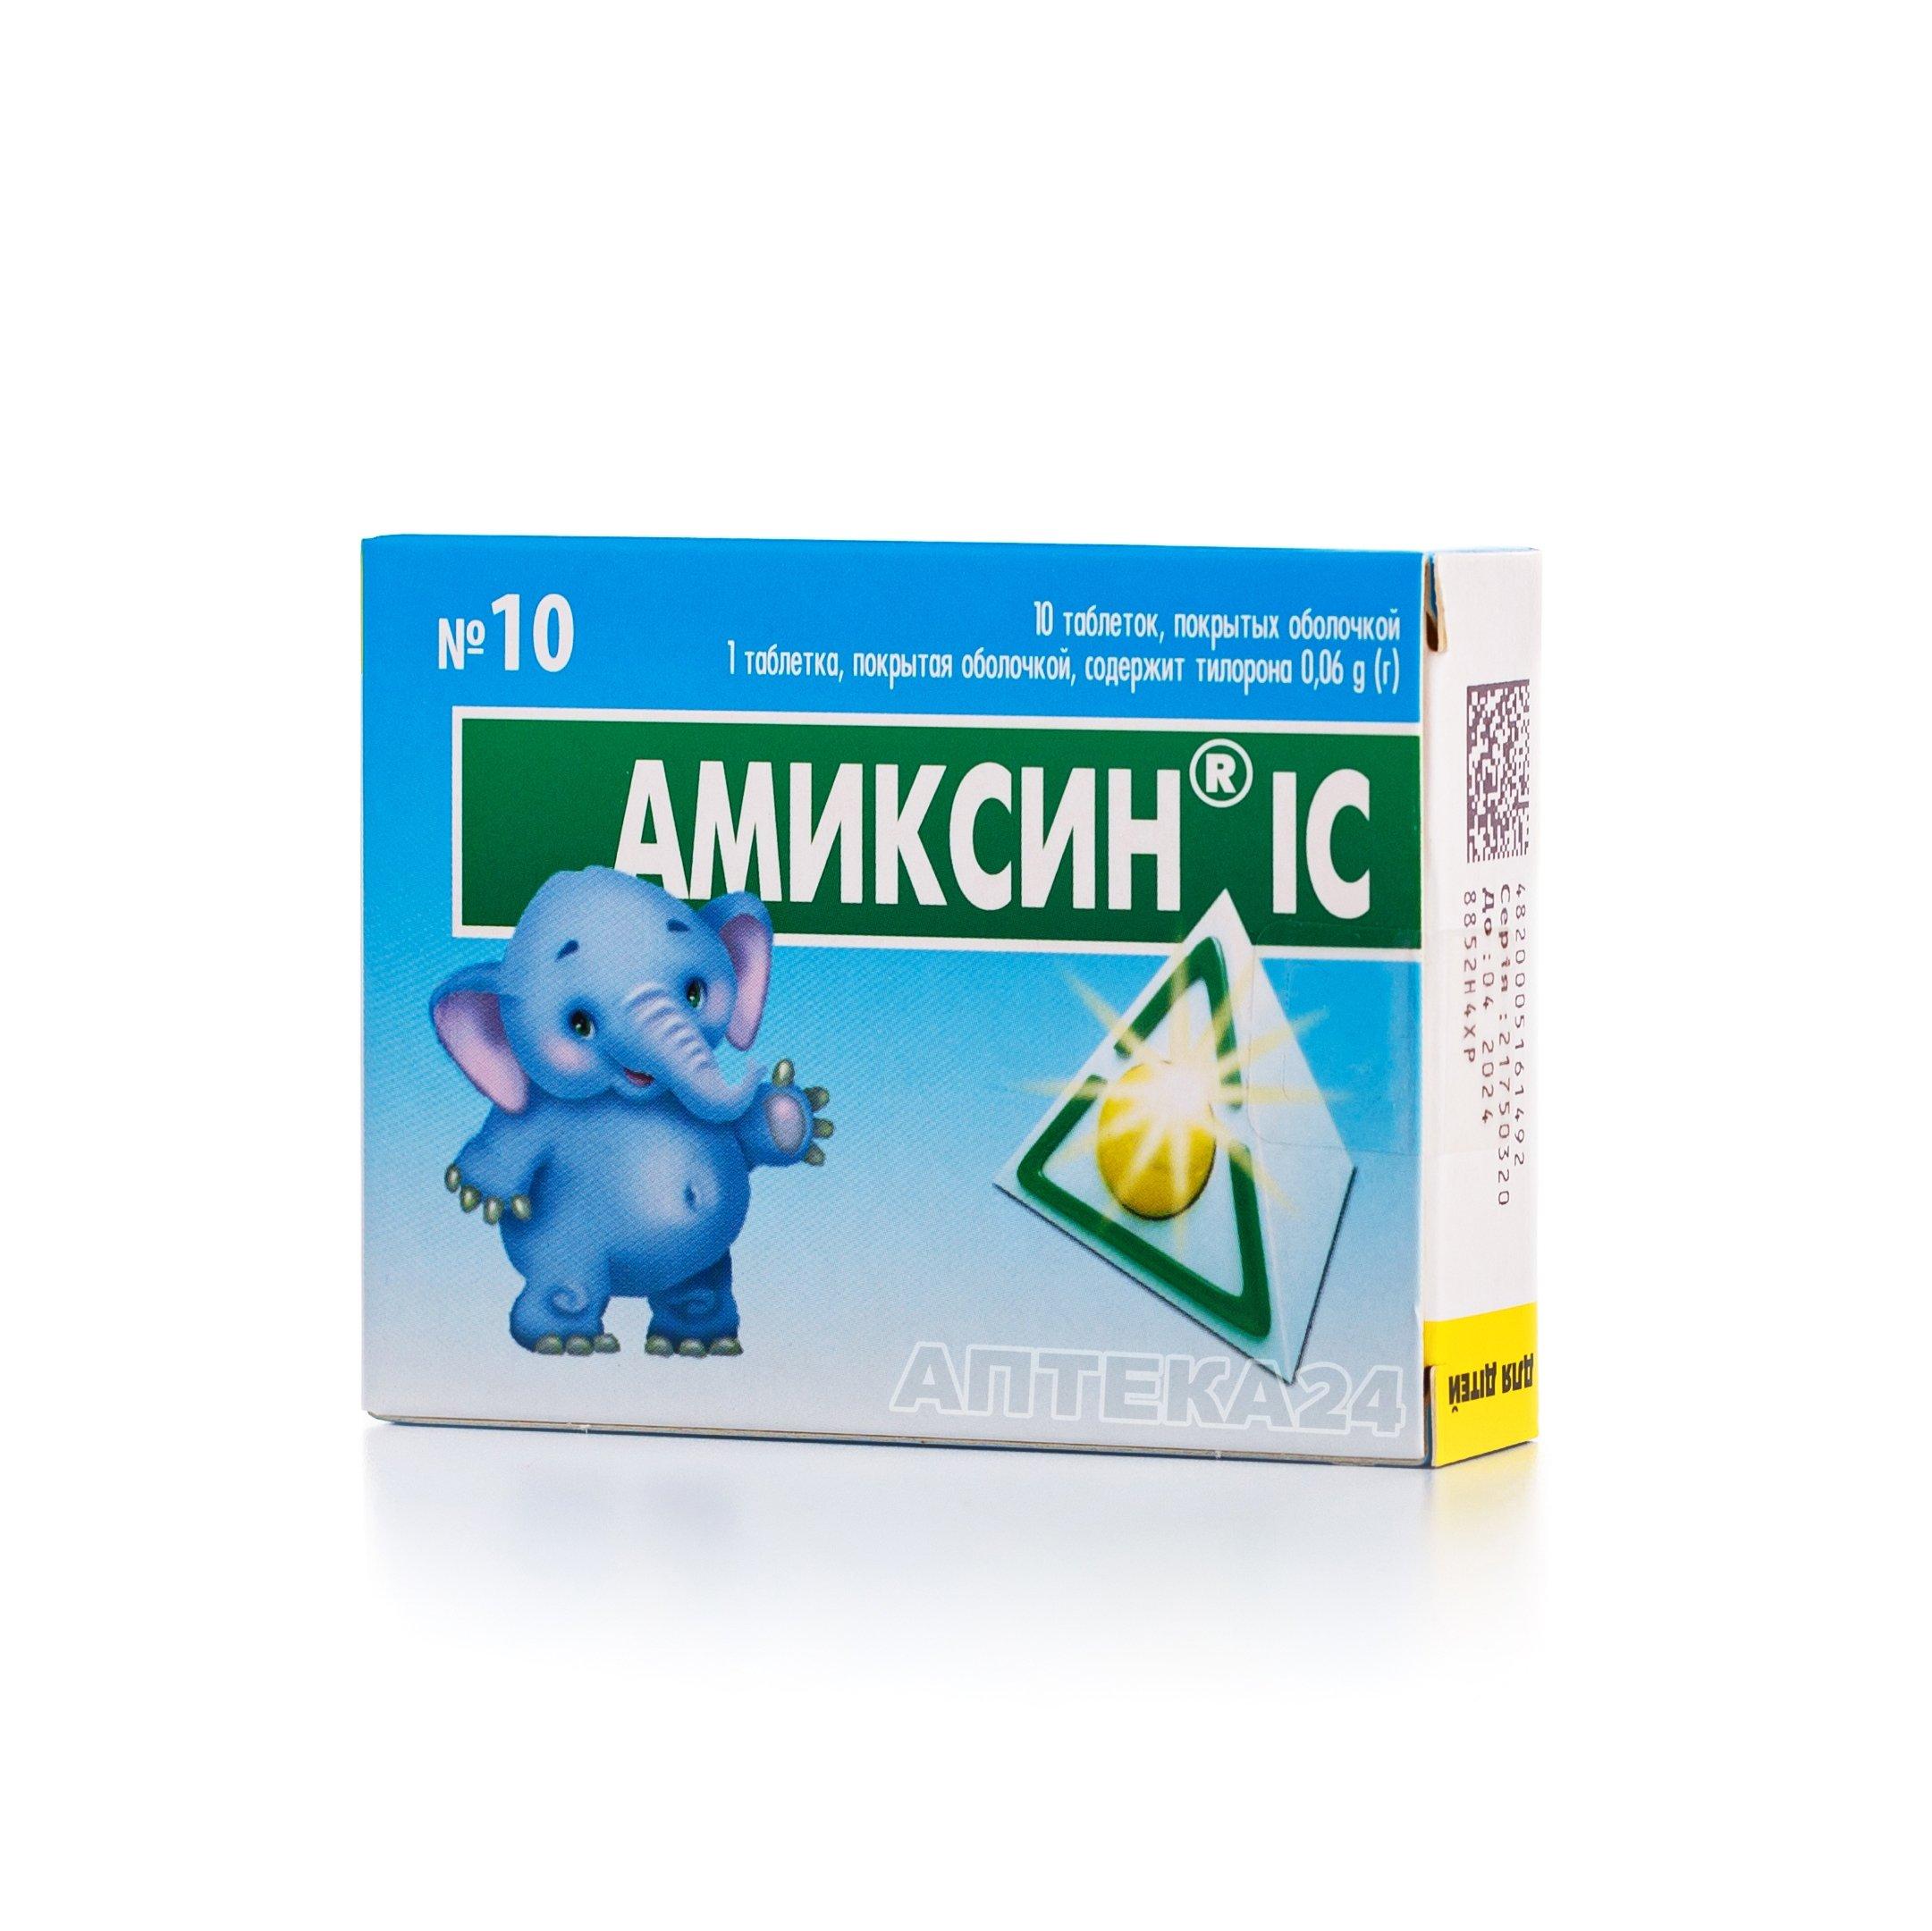 Амиксин® IC 0.06 г N10 таблетки_6005b6a195e38.jpeg